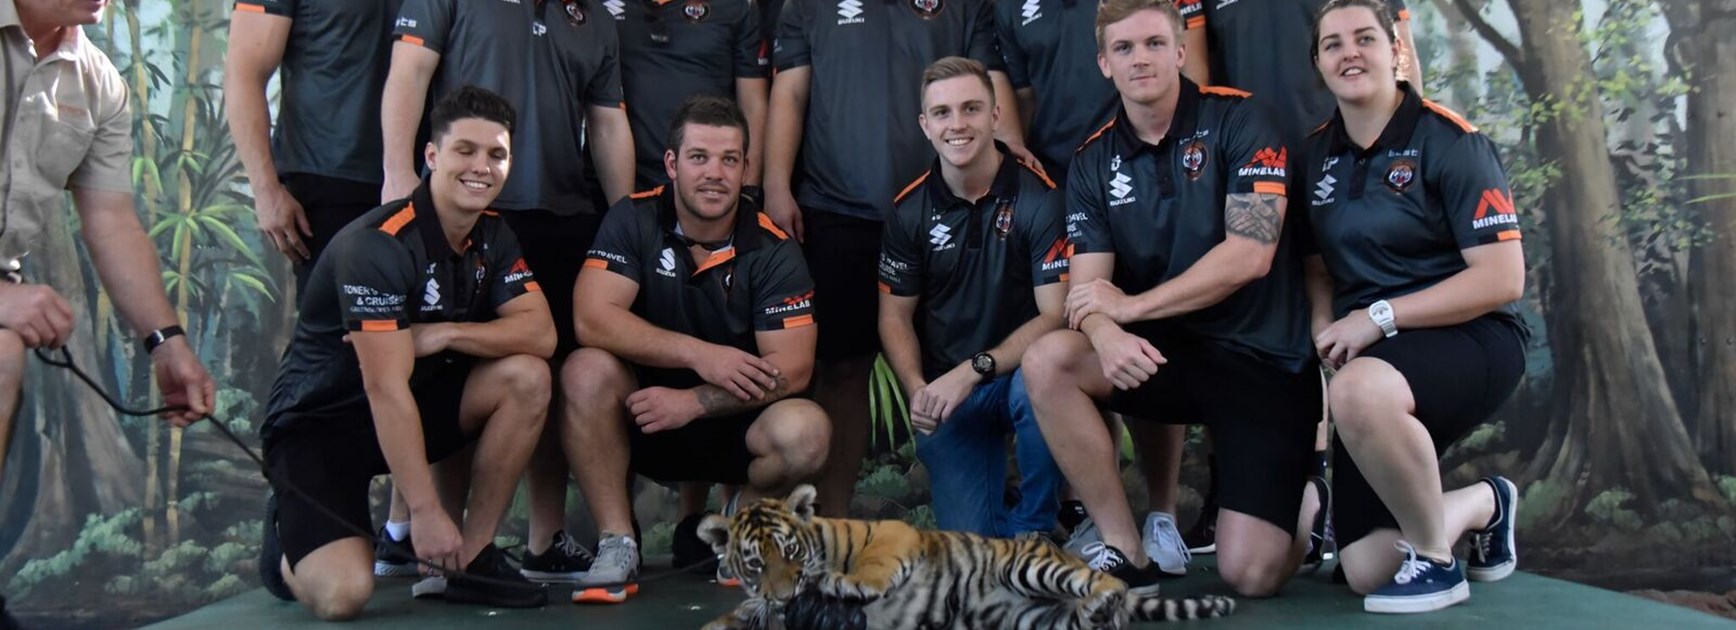 Tigers meet their purr-fect match